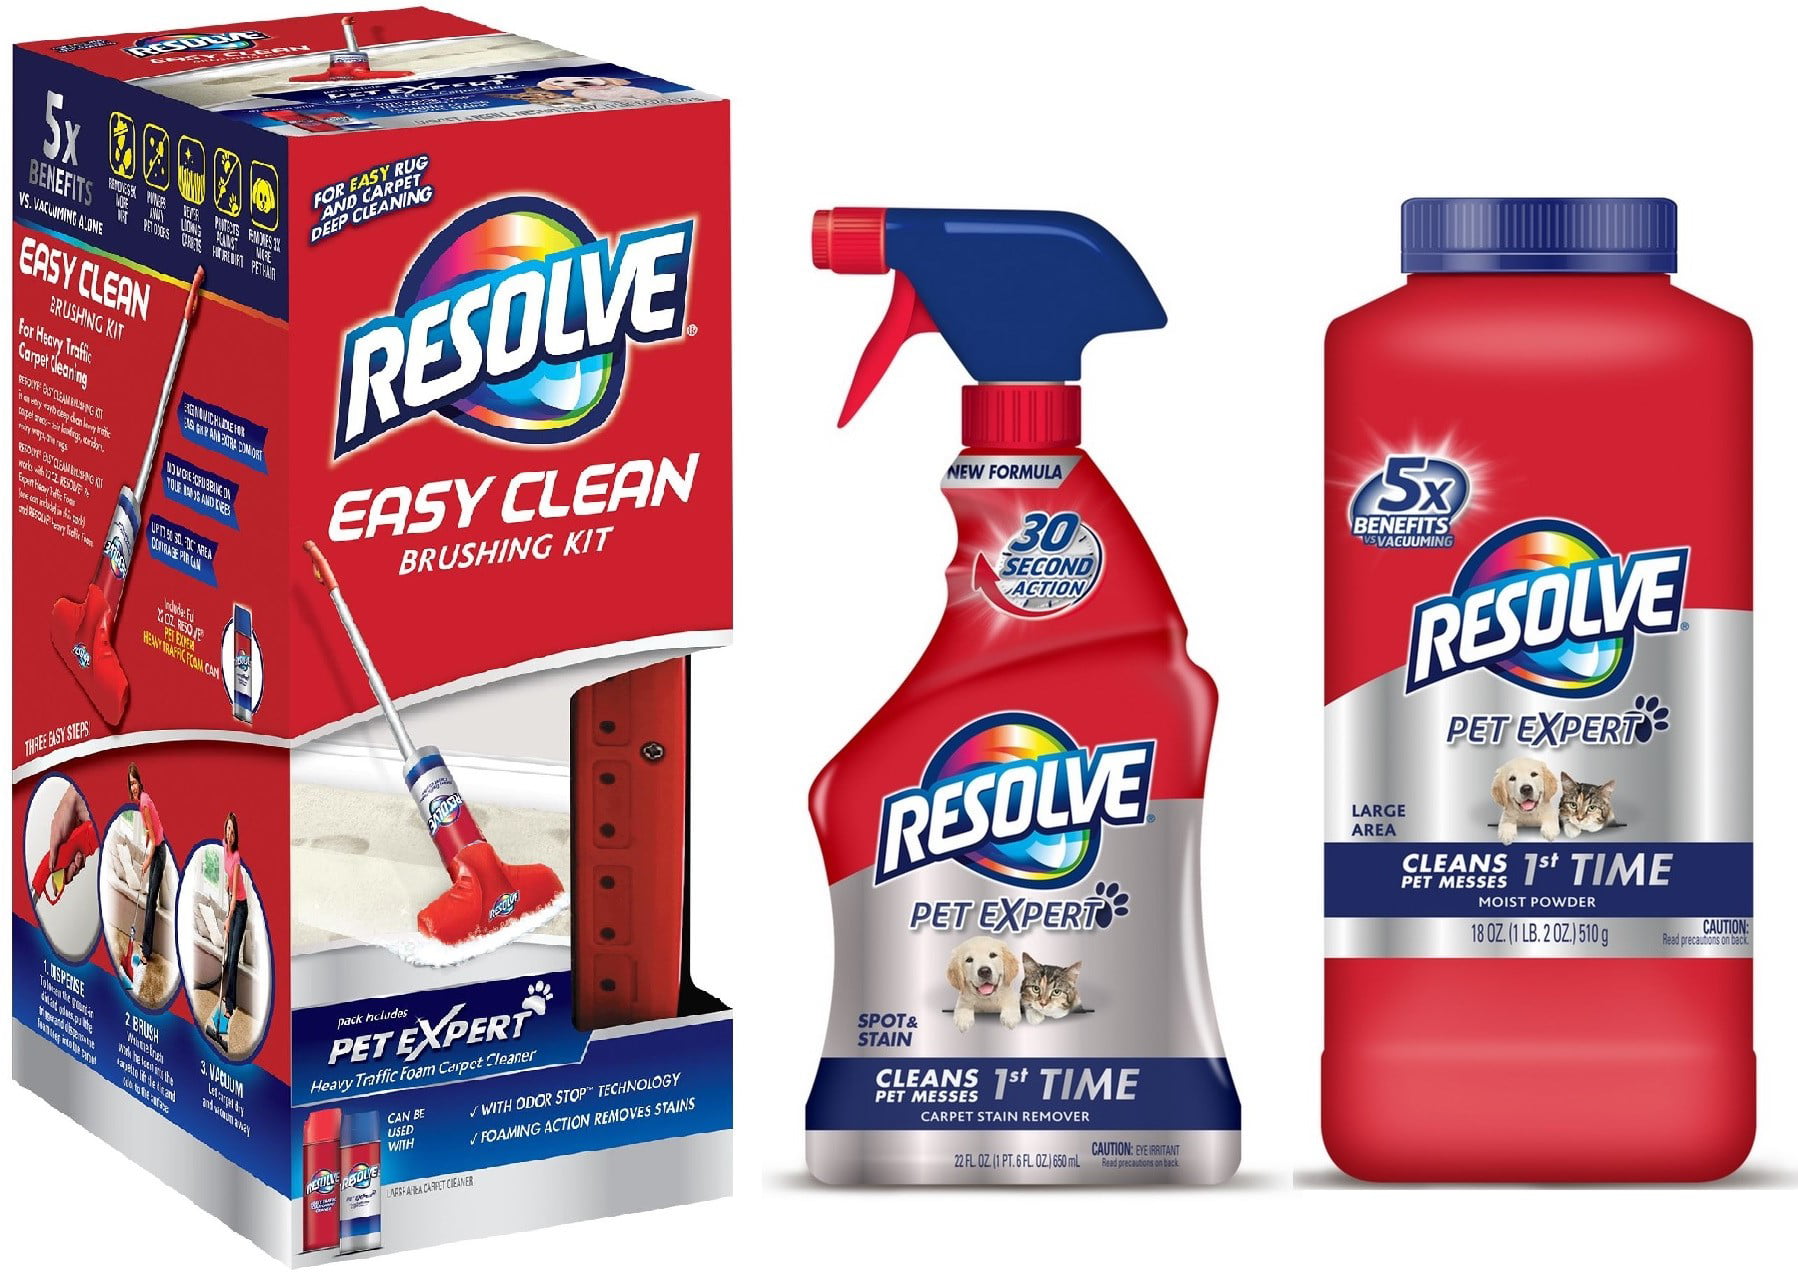 Resolve Pet Expert Easy Clean Brushing Kit